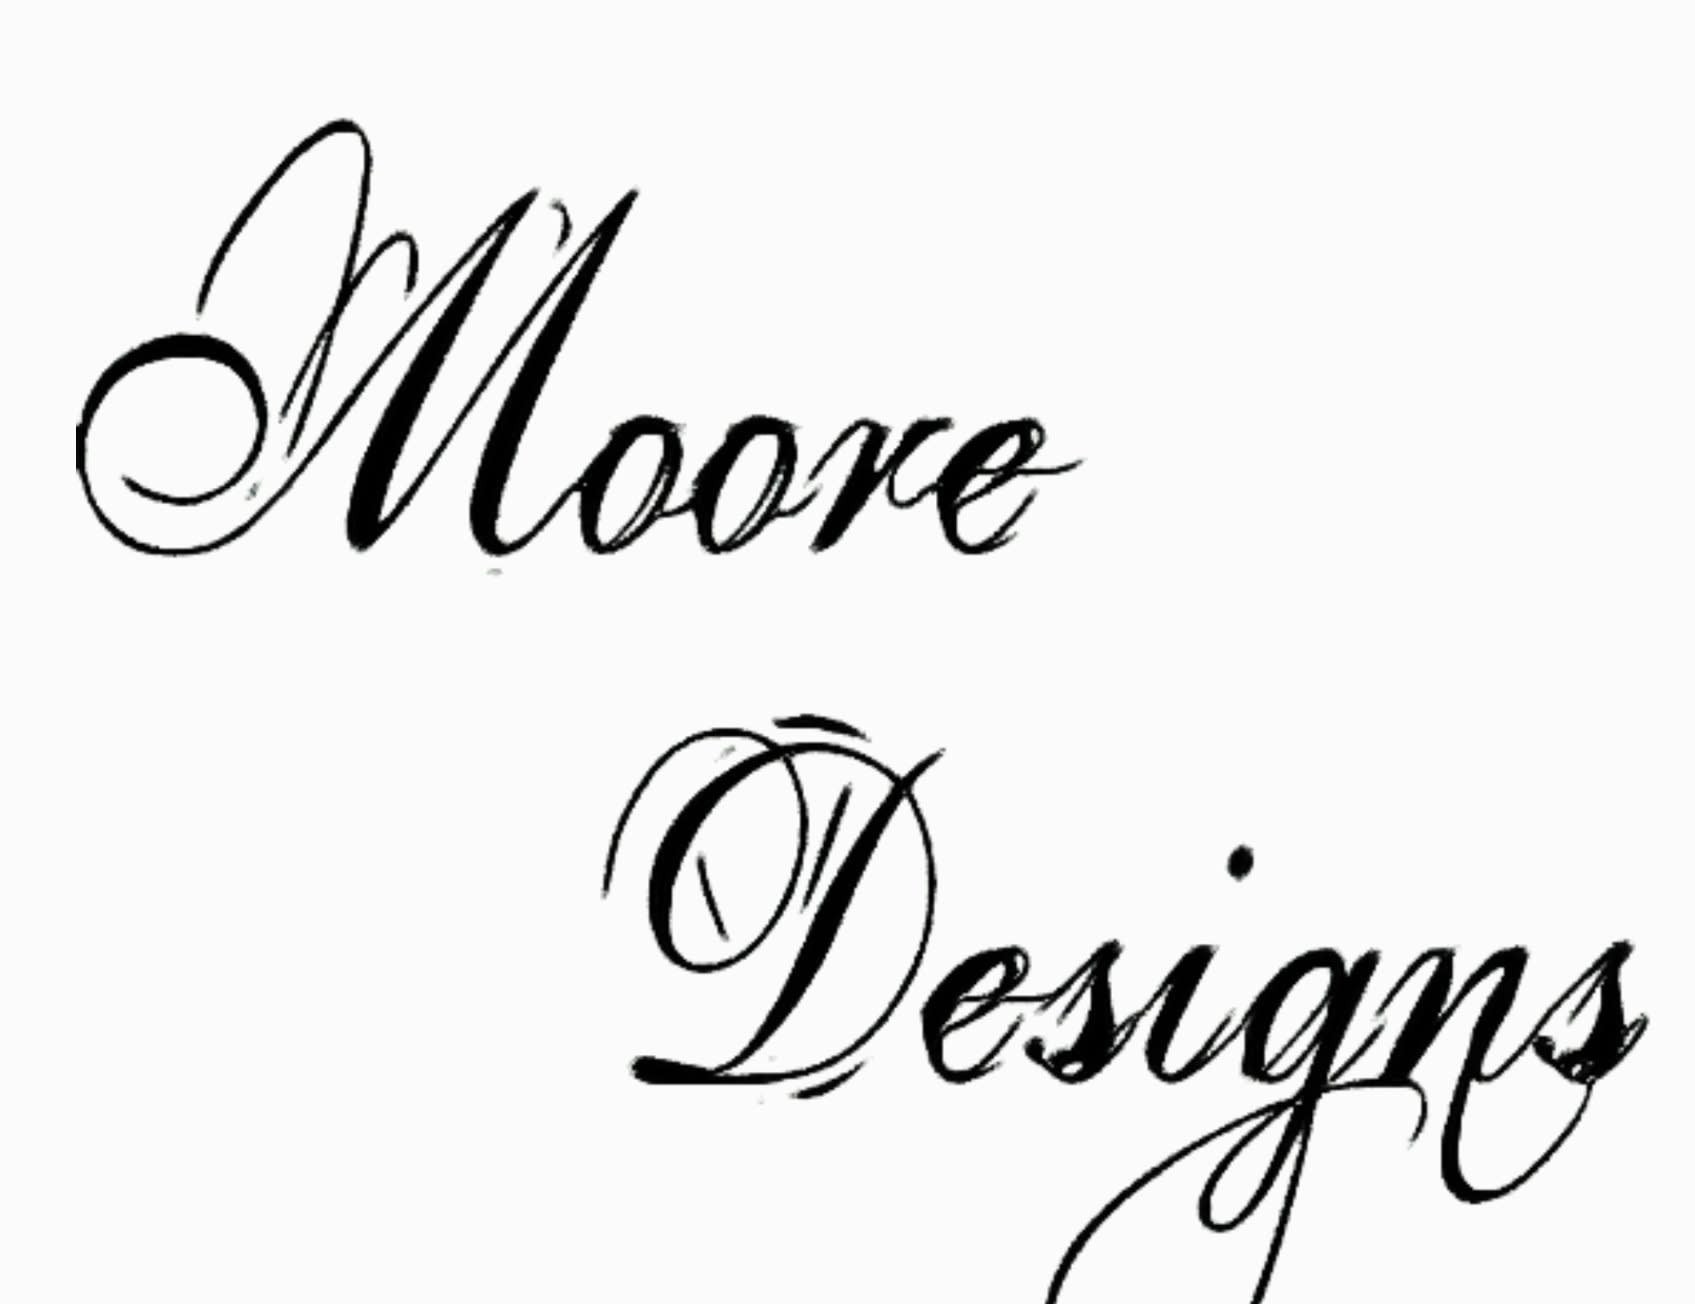 Moore Designs